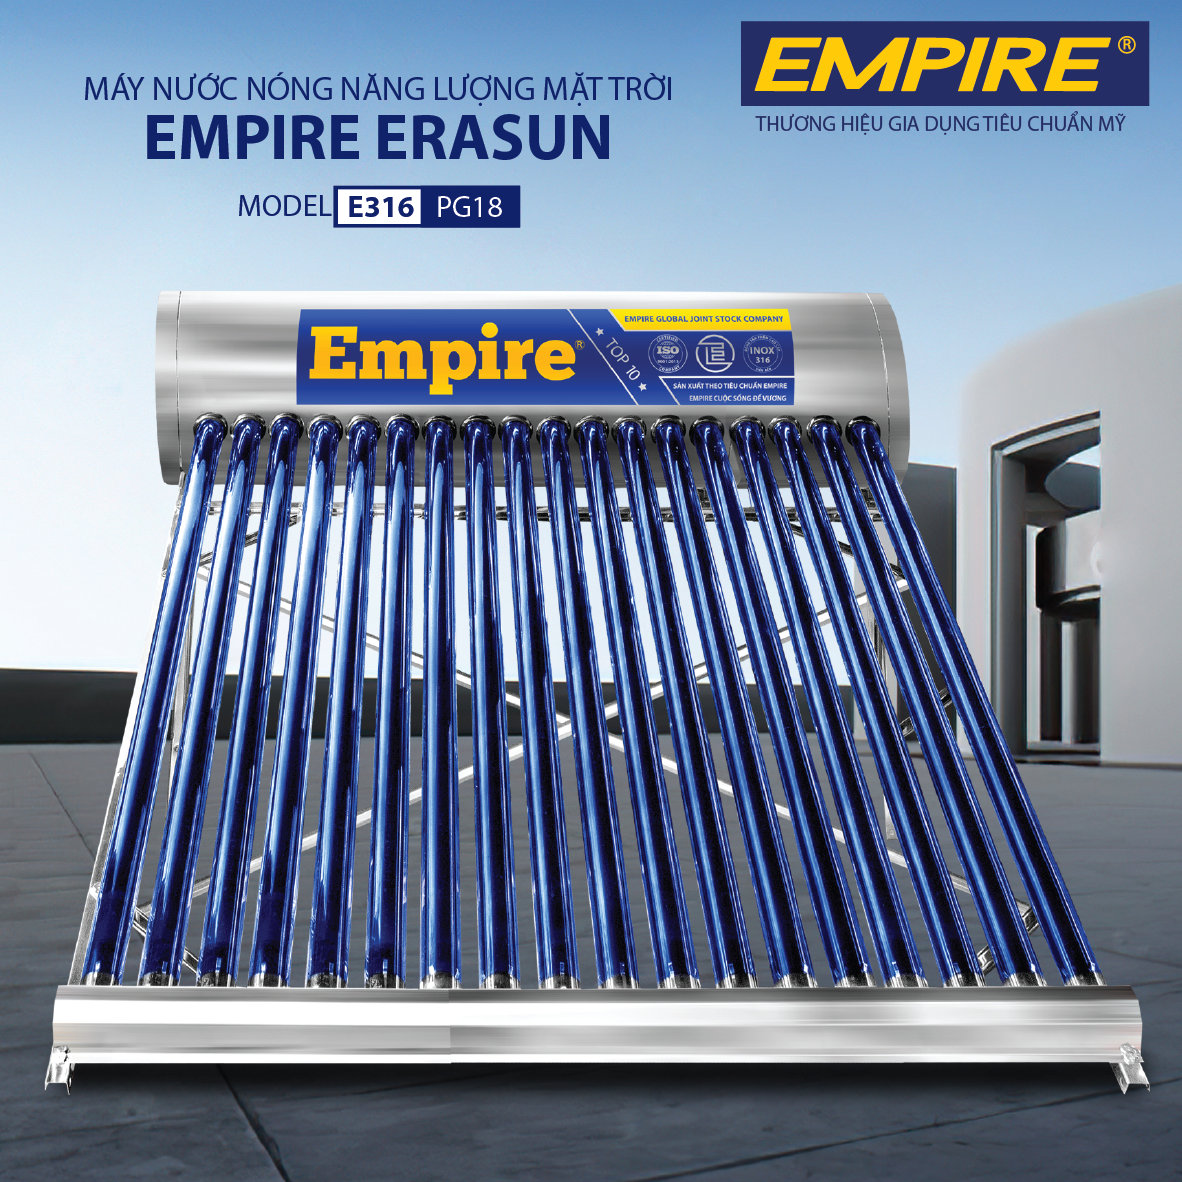 Máy nước nóng năng lượng mặt trời EMPIRE ERASUN 180 lít- Hàng chính hãng.